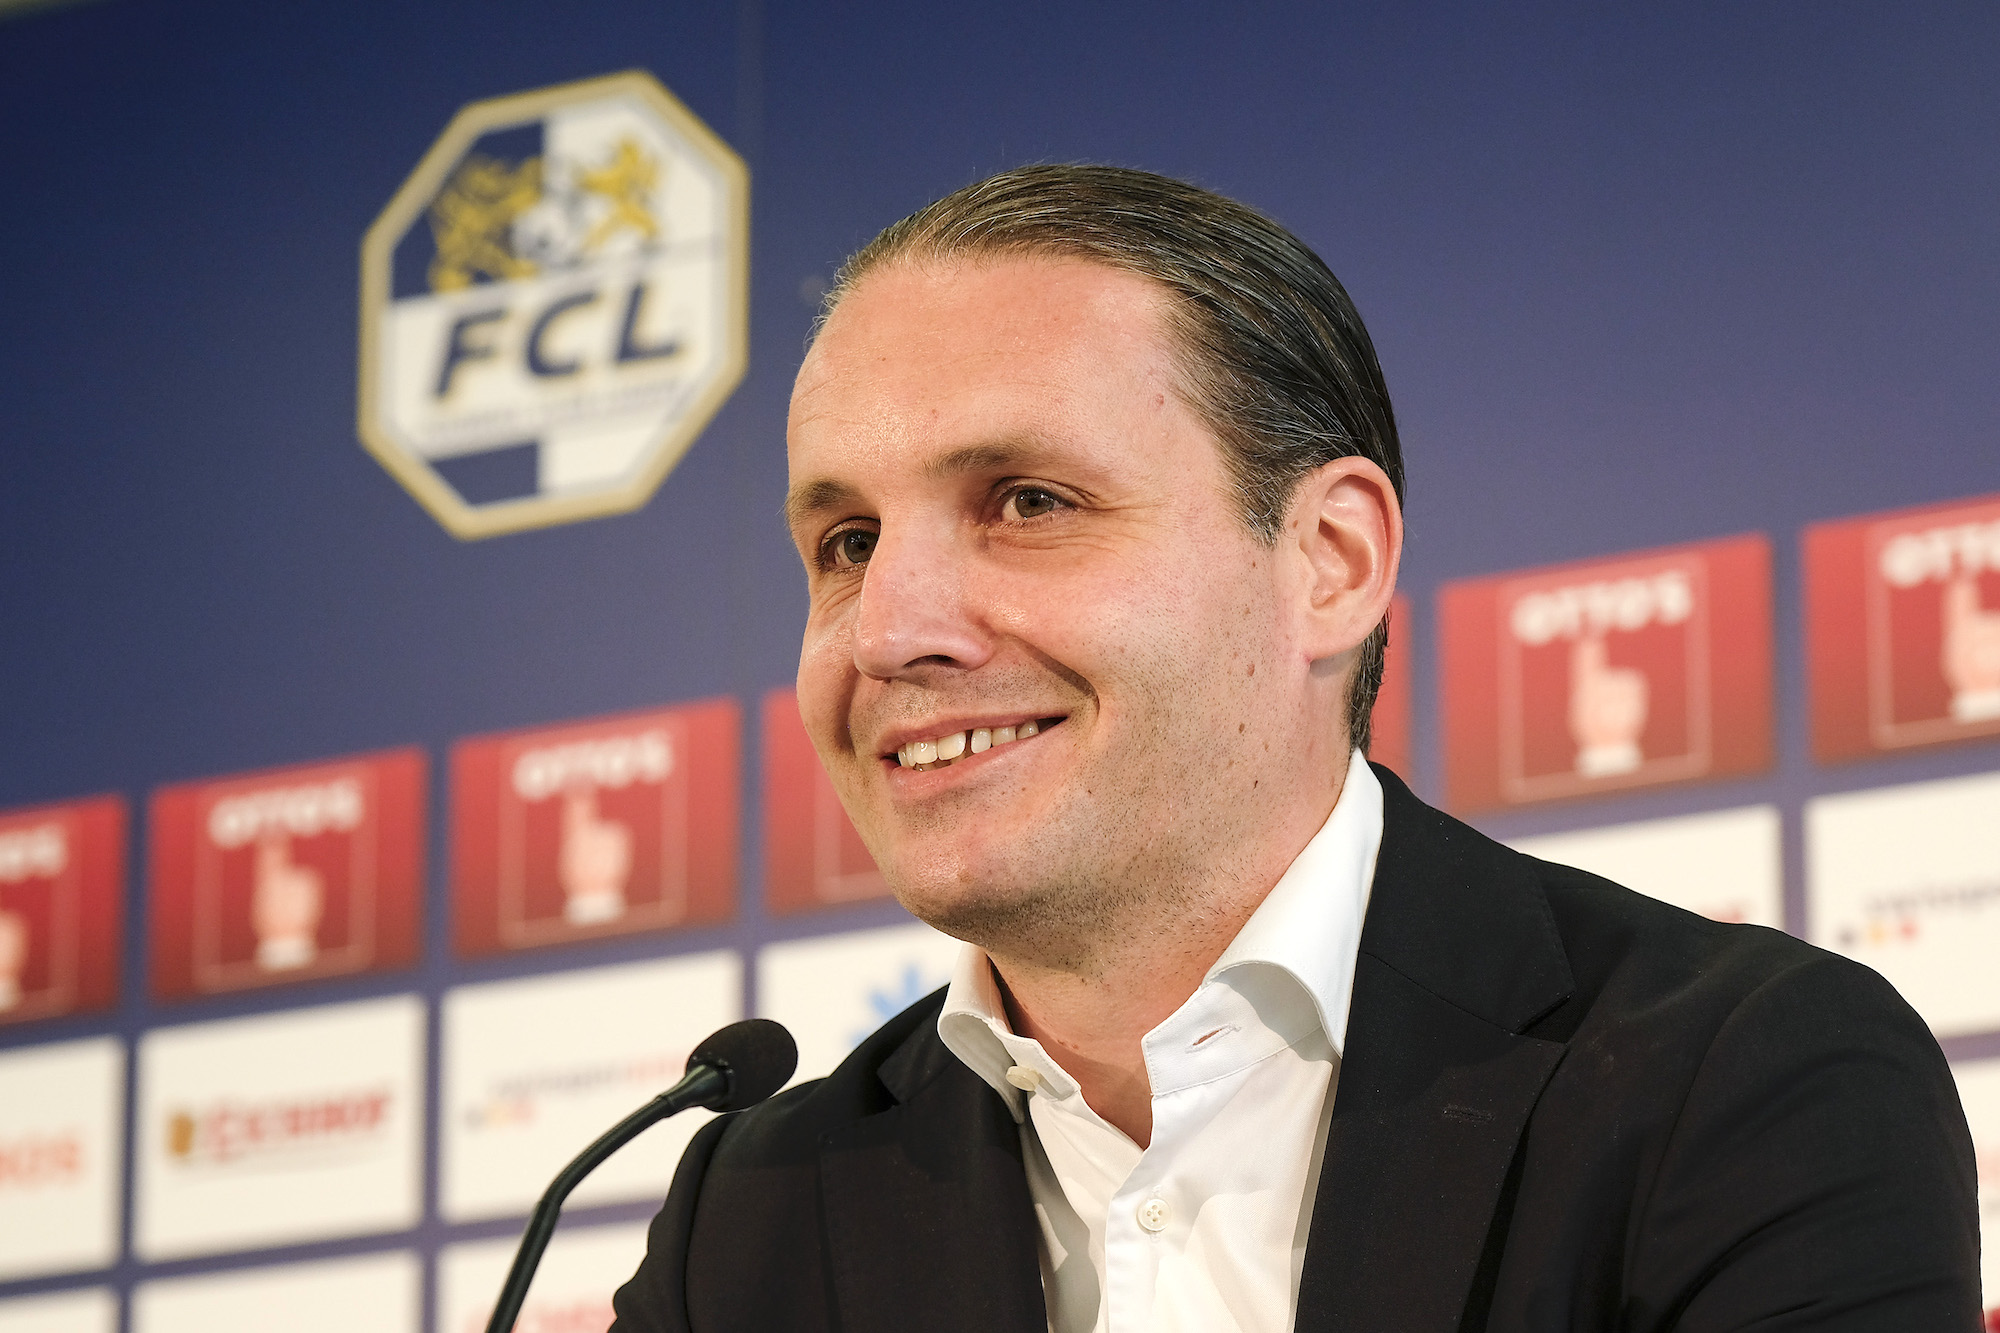 Endlich mit einem Lachen: Stolz präsentiert Sportkoordinator Remo Meyer den neuen Cheftrainer des FCL.